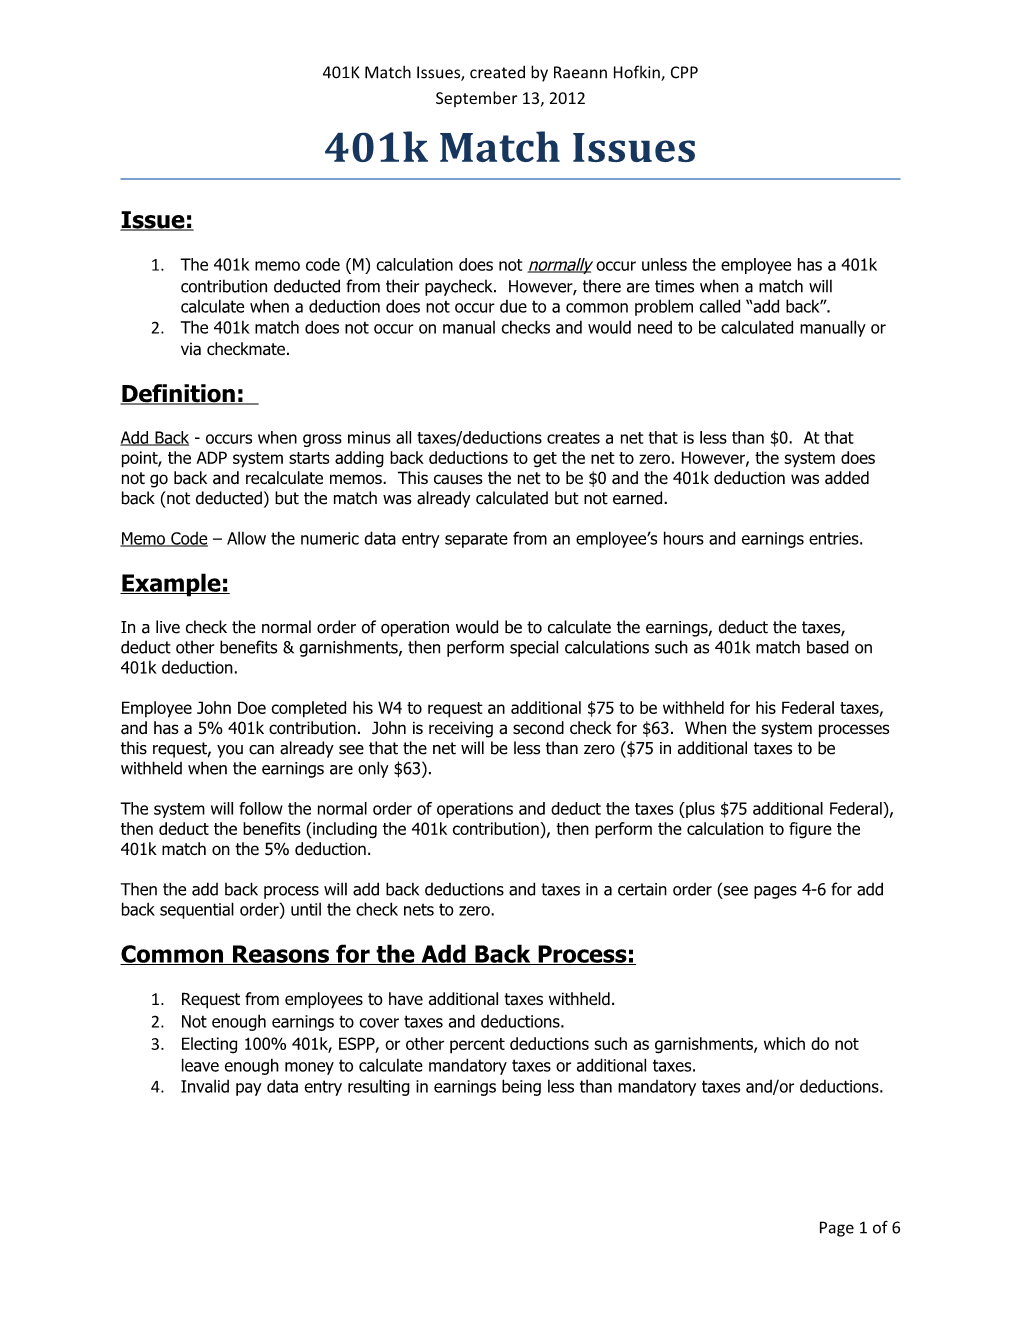 401K Match Issues, Created by Raeann Hofkin, CPP